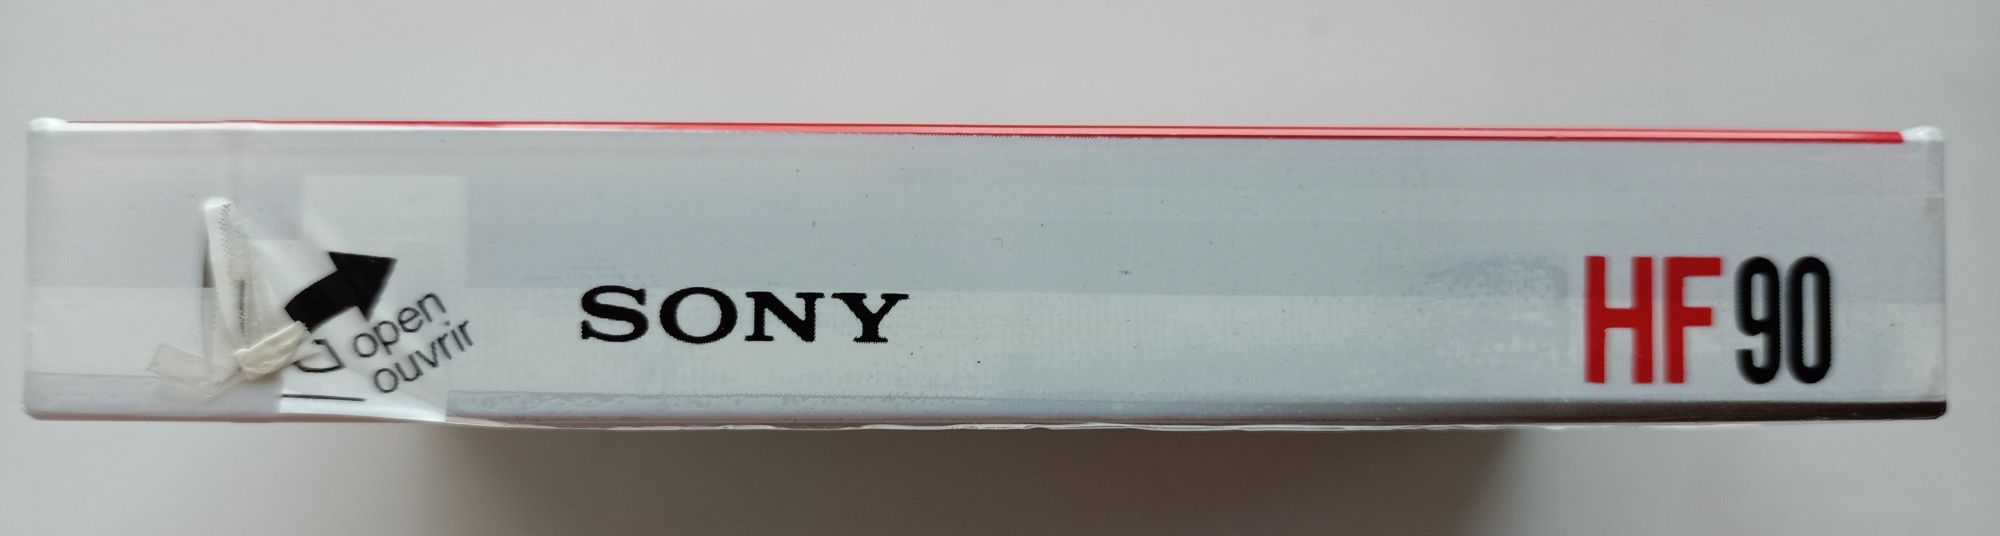 Новая винтажная кассета SONY HF90c Japan